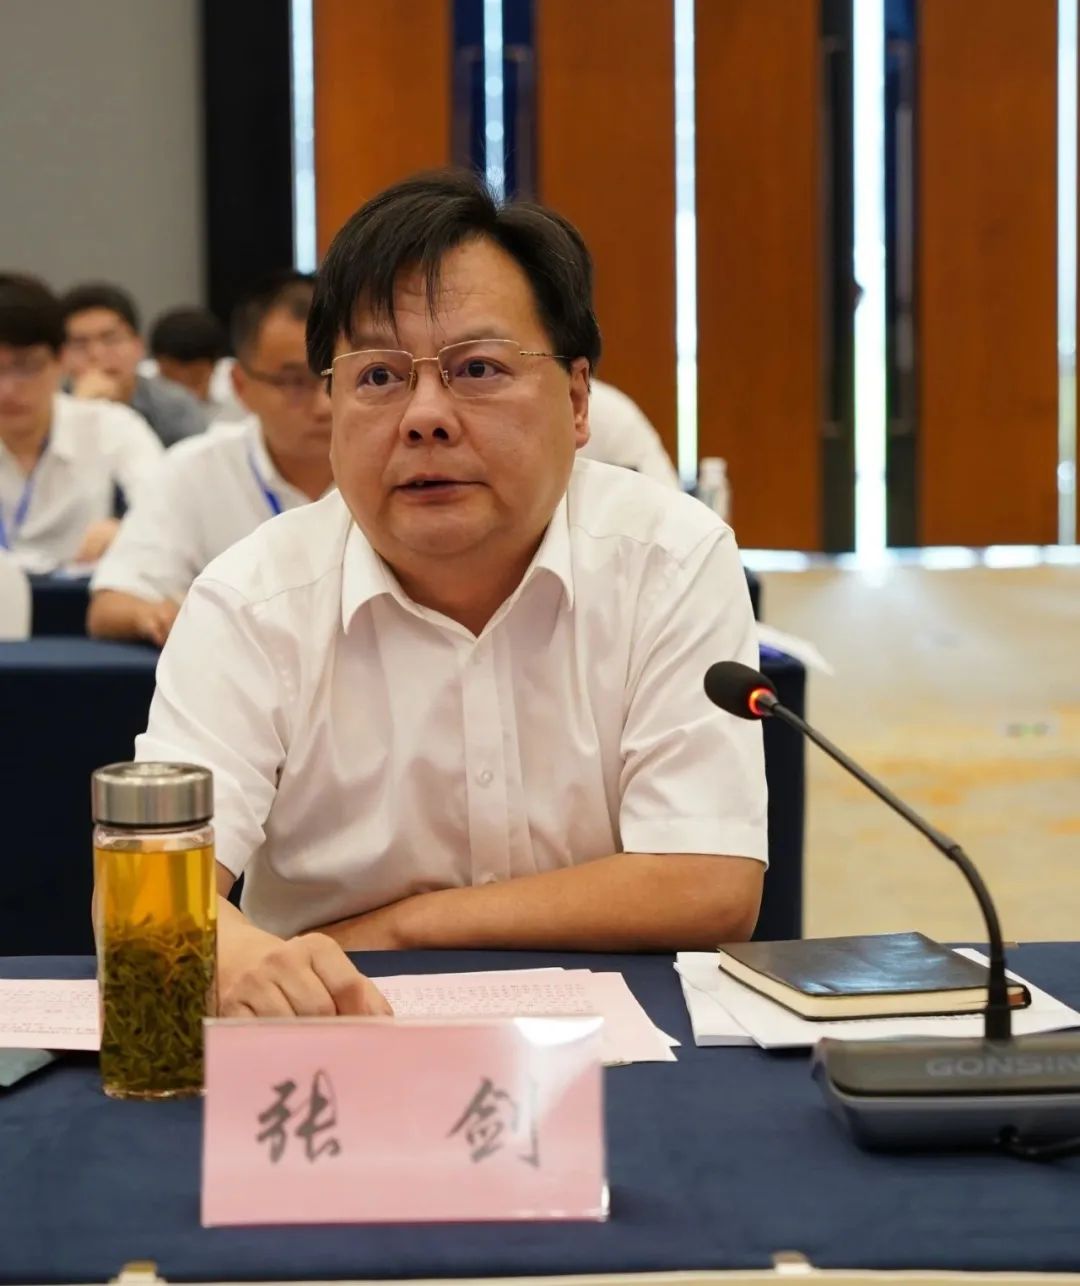 安庆经济技术开发区党工委书记兼管委会主任张剑在大有时空发言